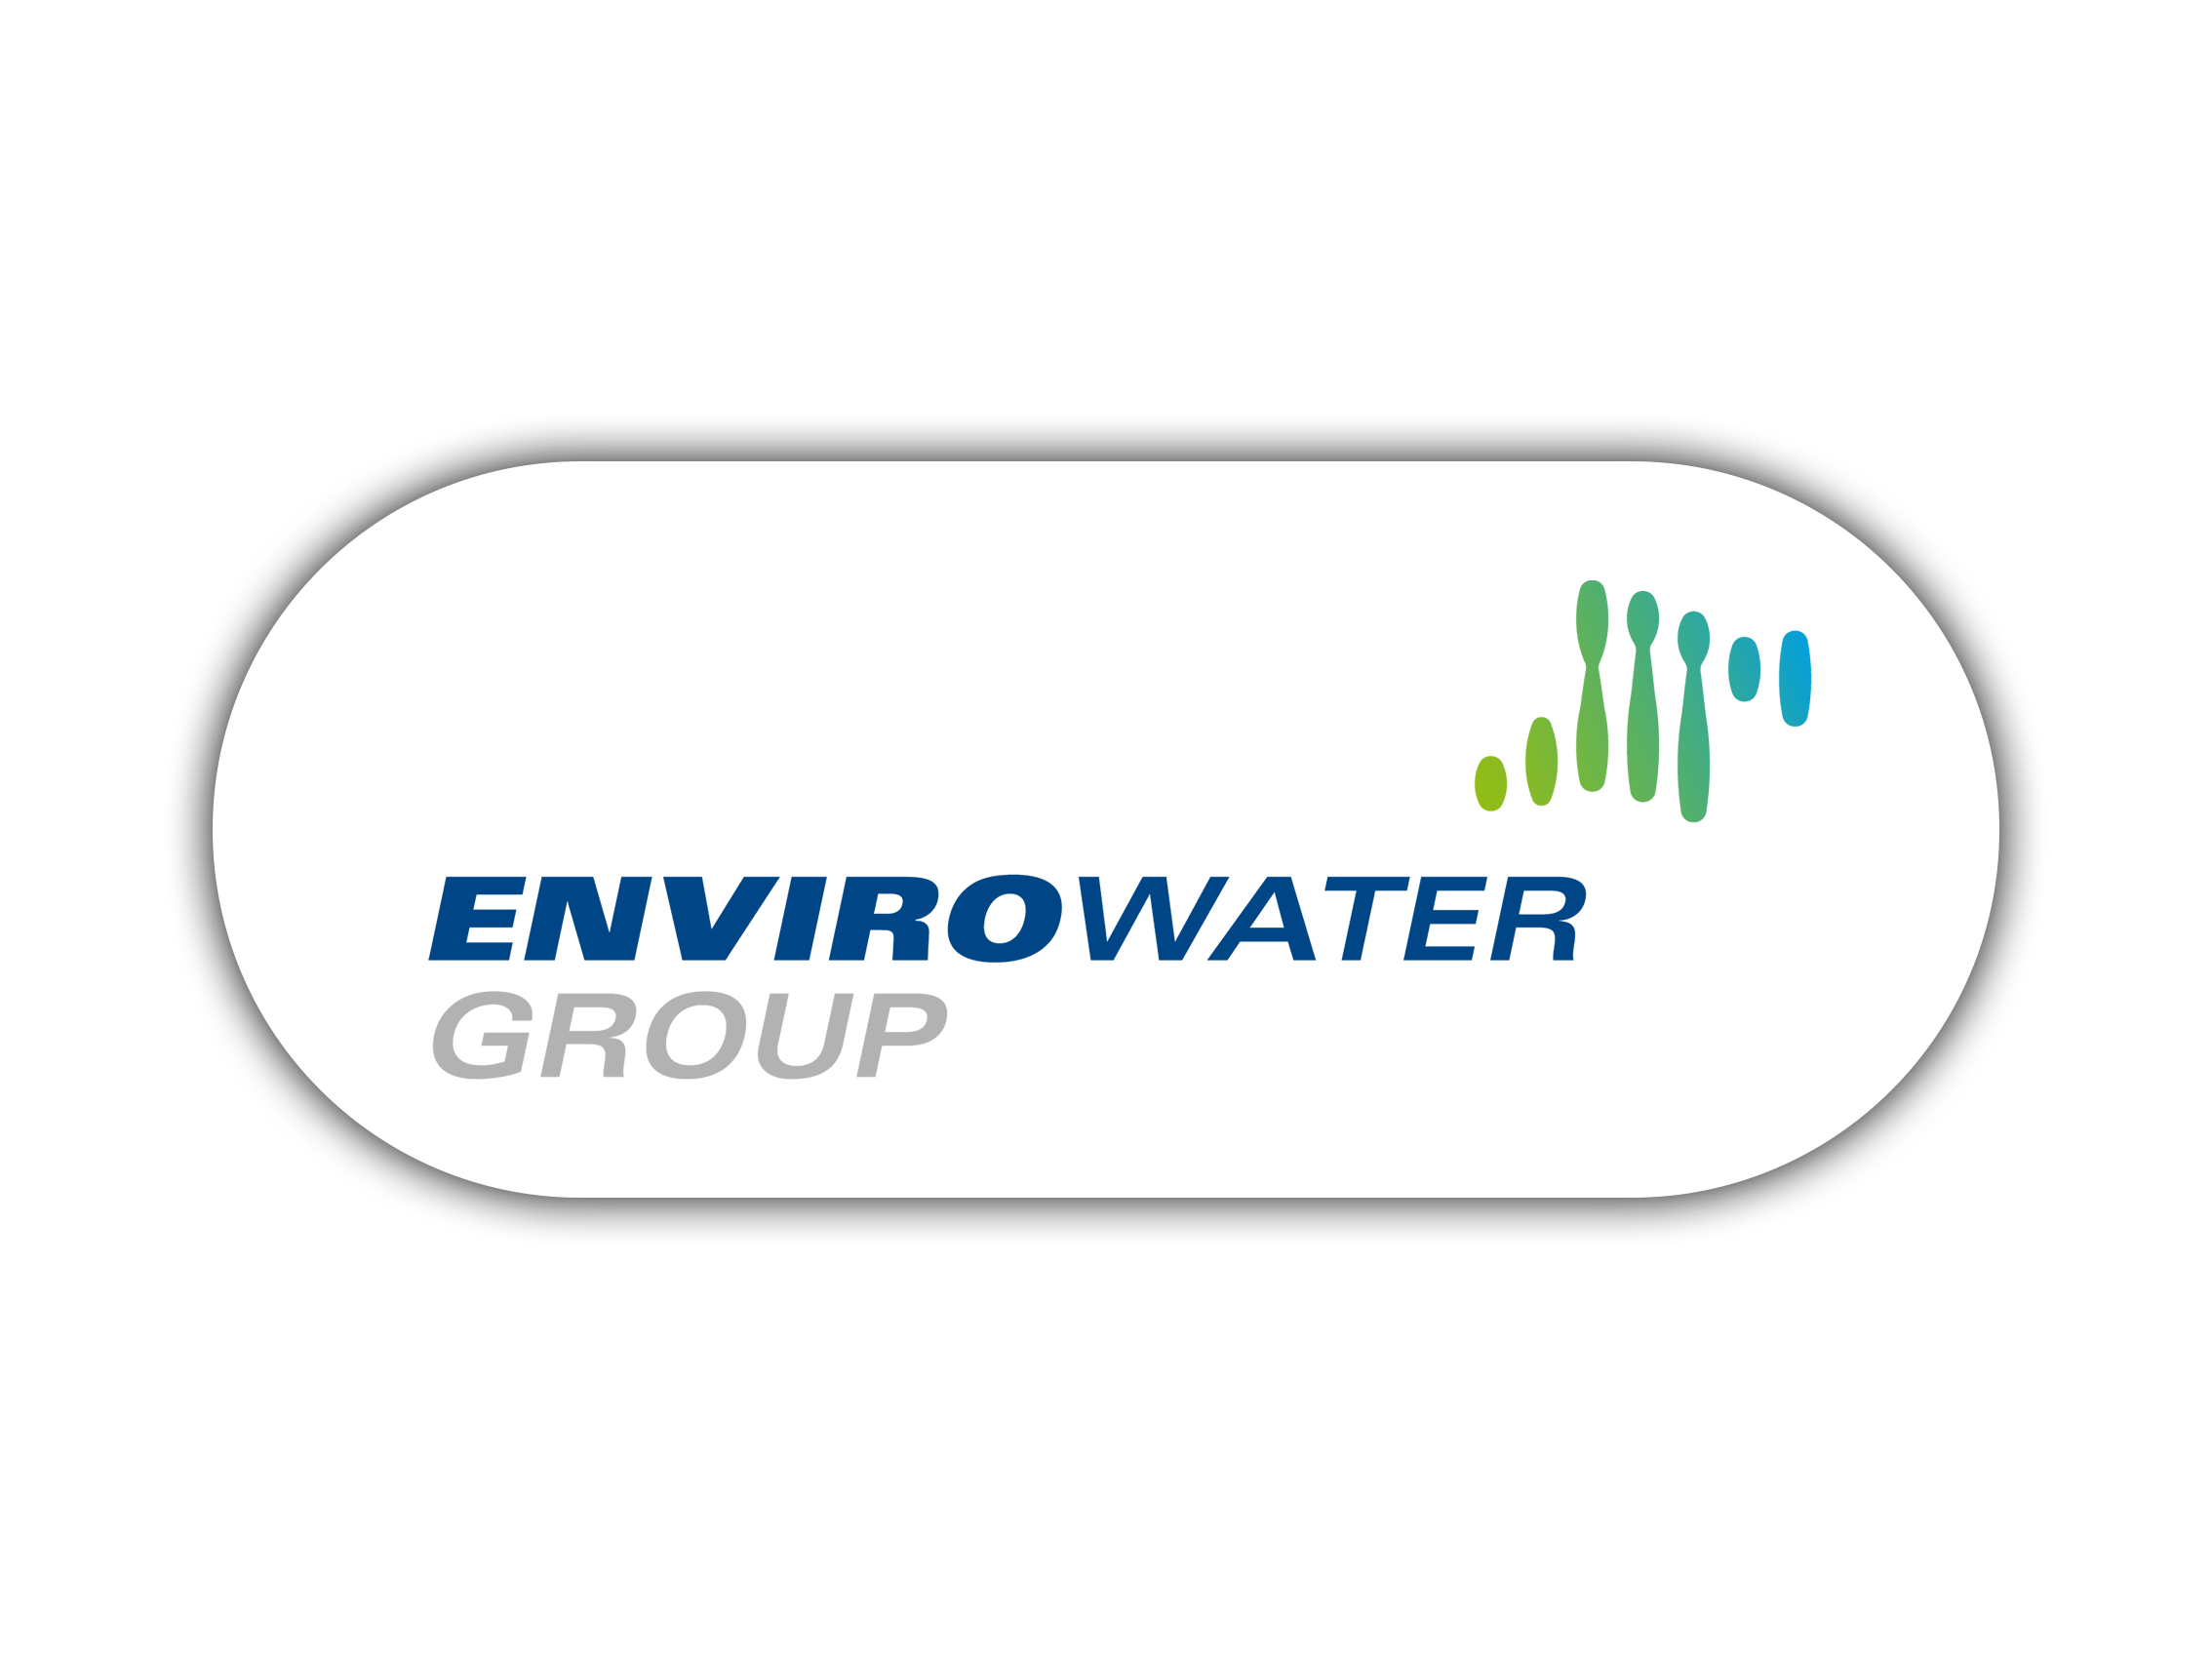 EnviroWATER Group Logo mit Kreis